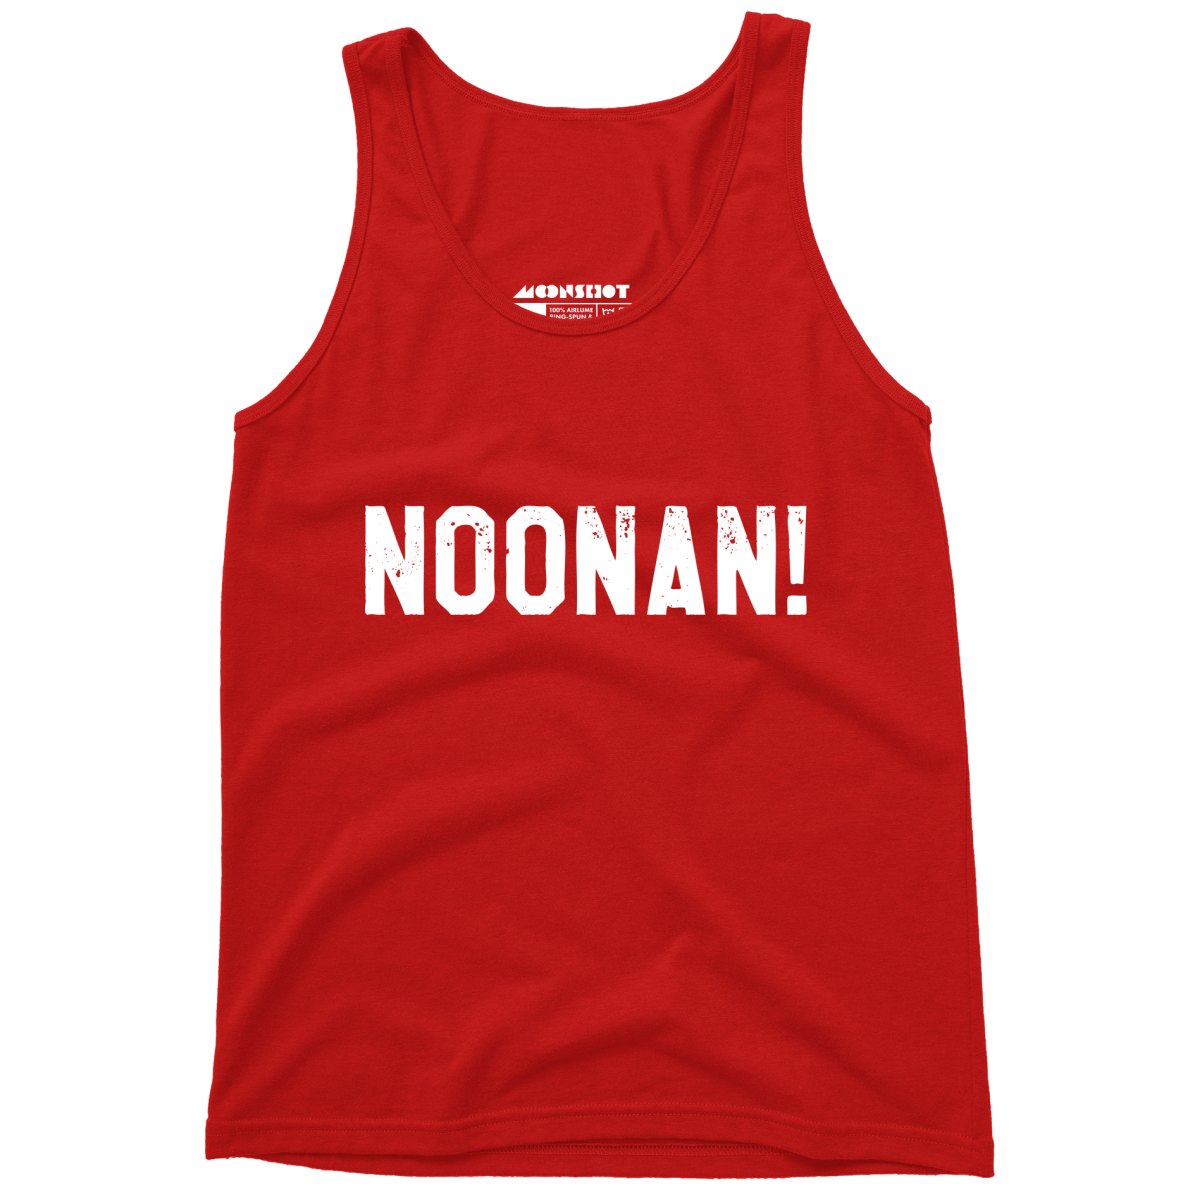 Noonan! - Unisex Tank Top